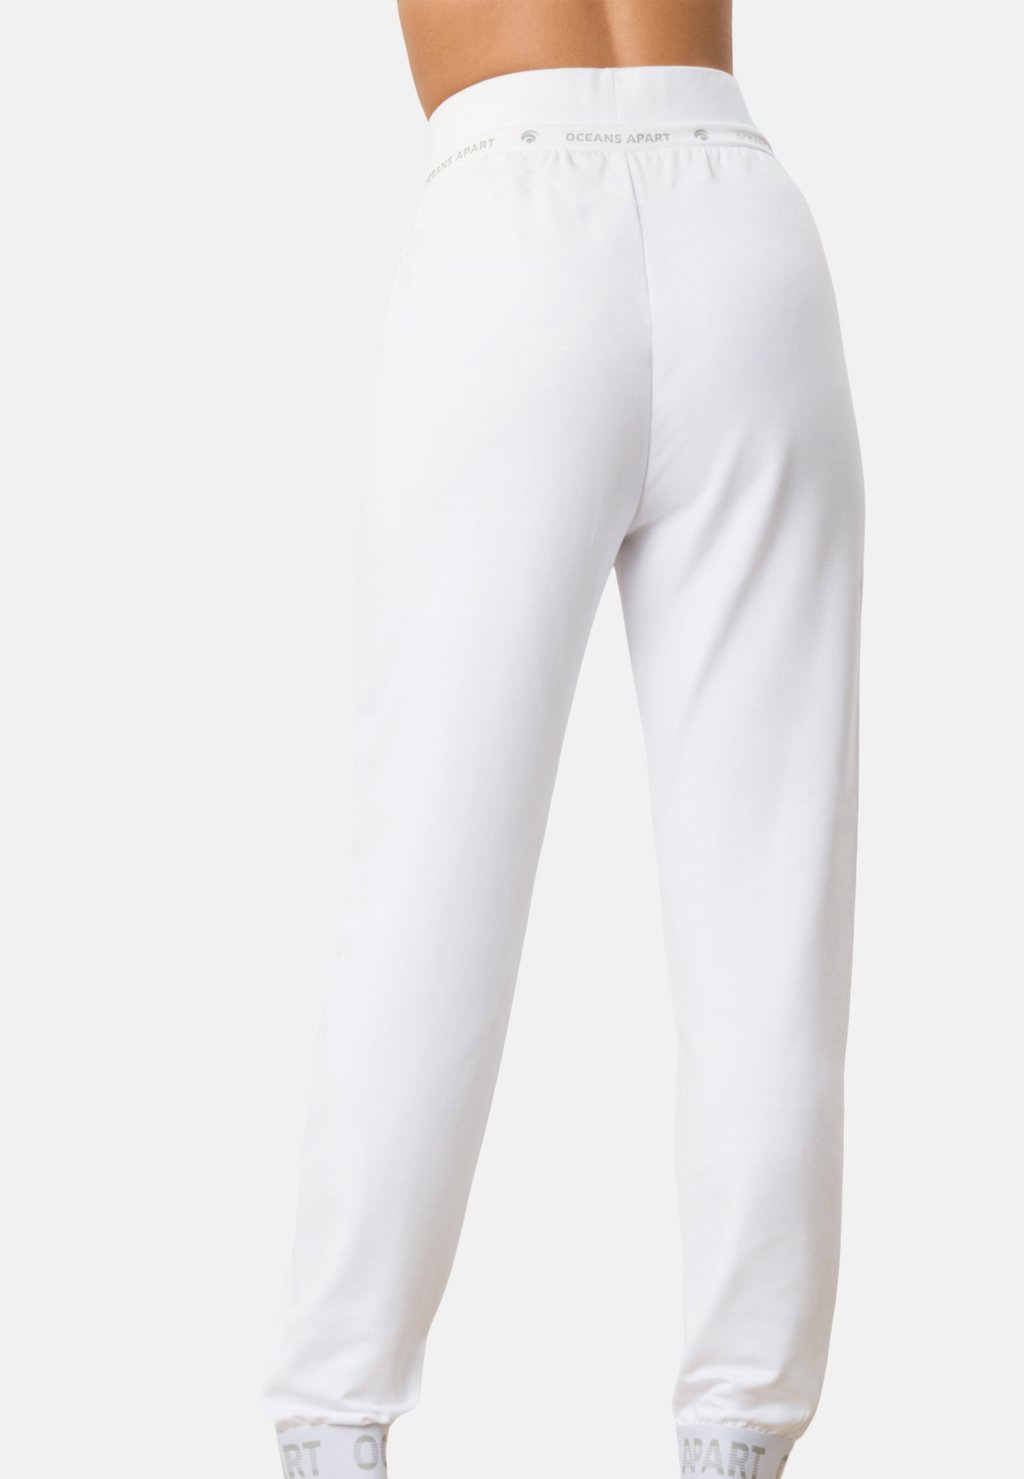 Спортивные штаны BEAUTY OCEANSAPART, цвет white